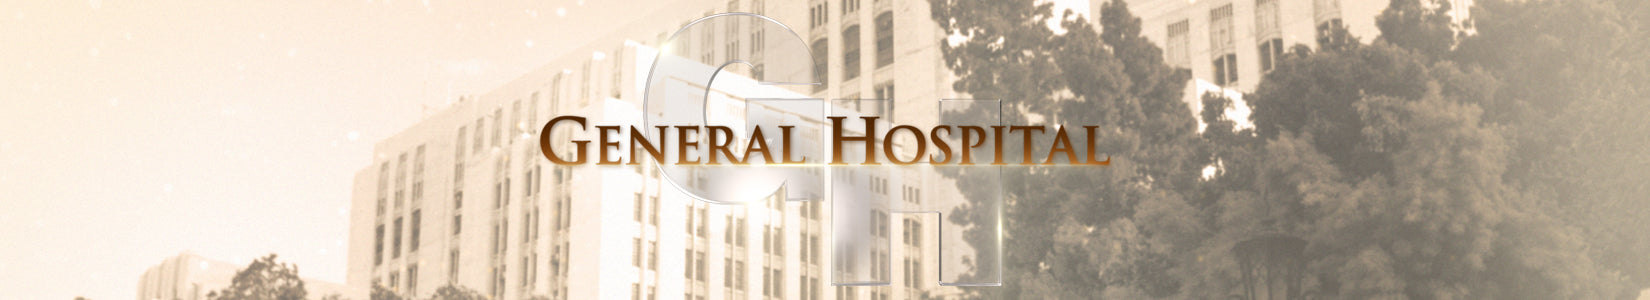 General Hospital-Mobile